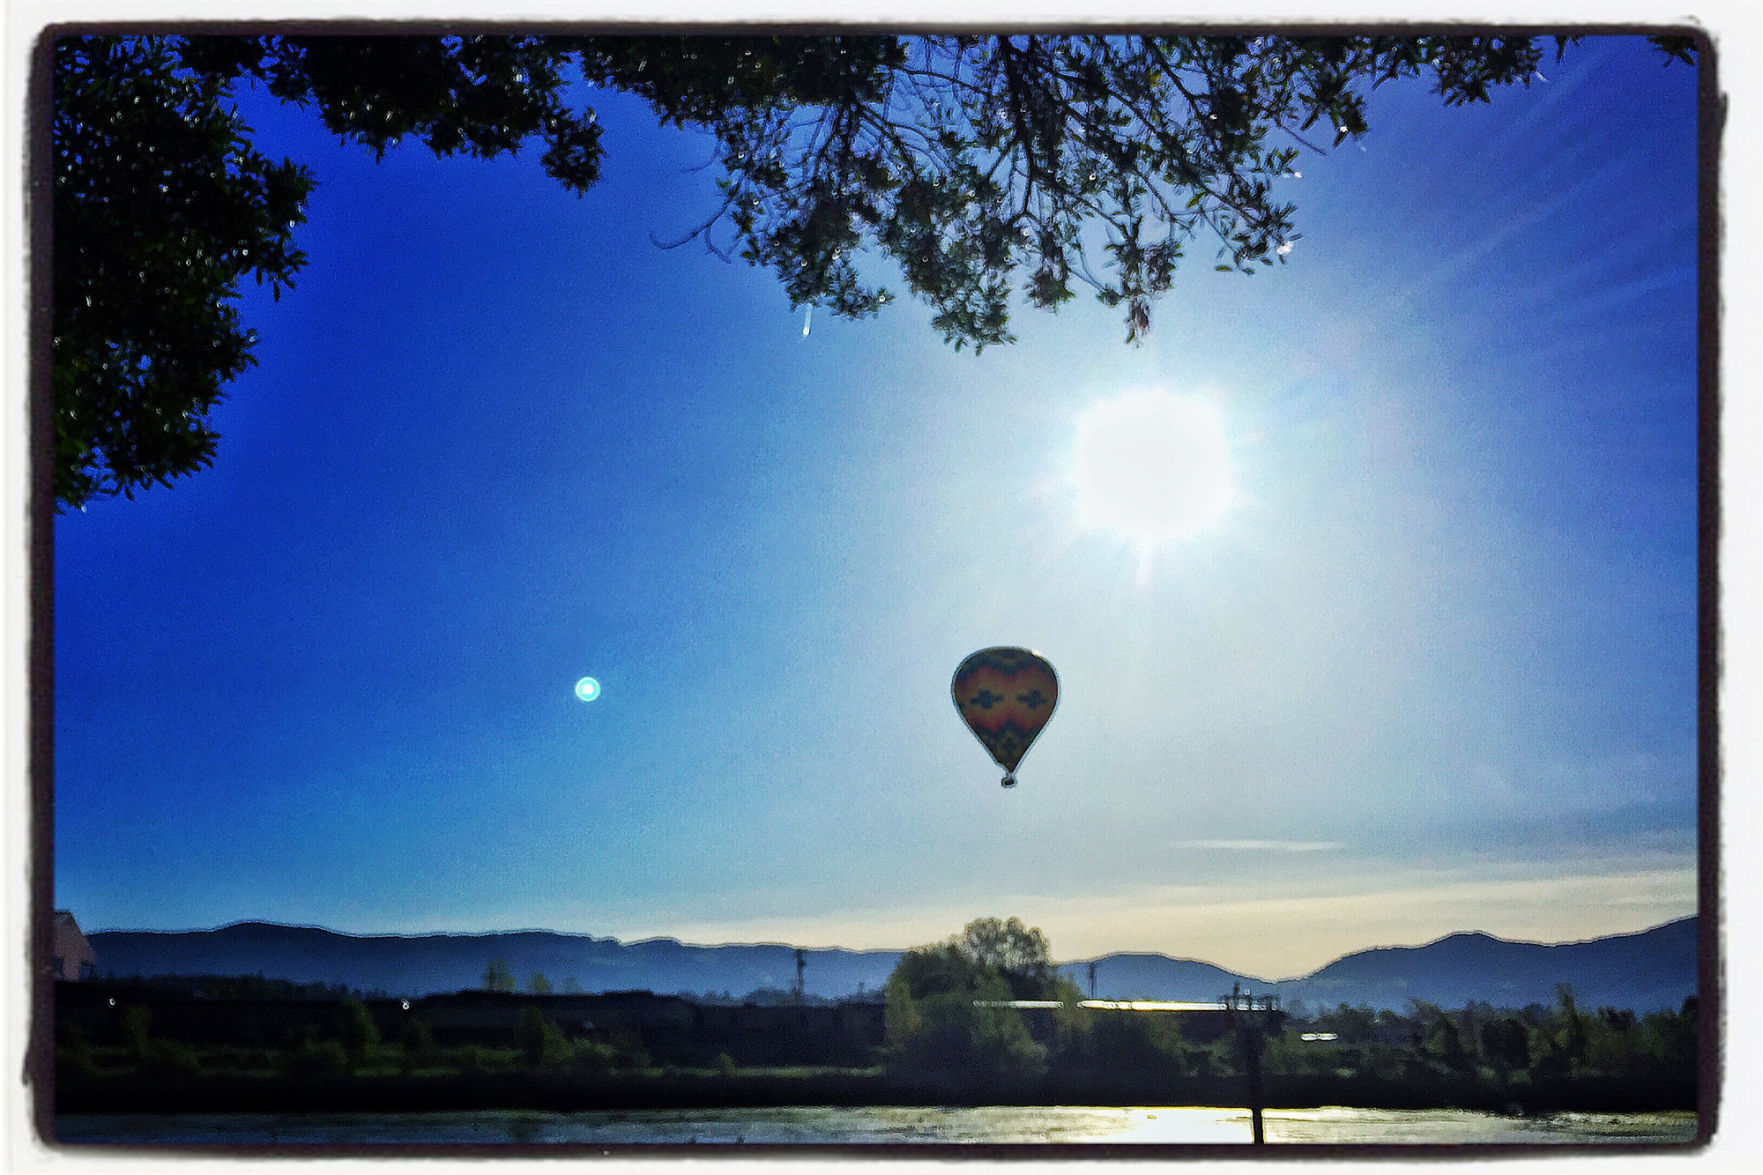 local hot air balloon rides